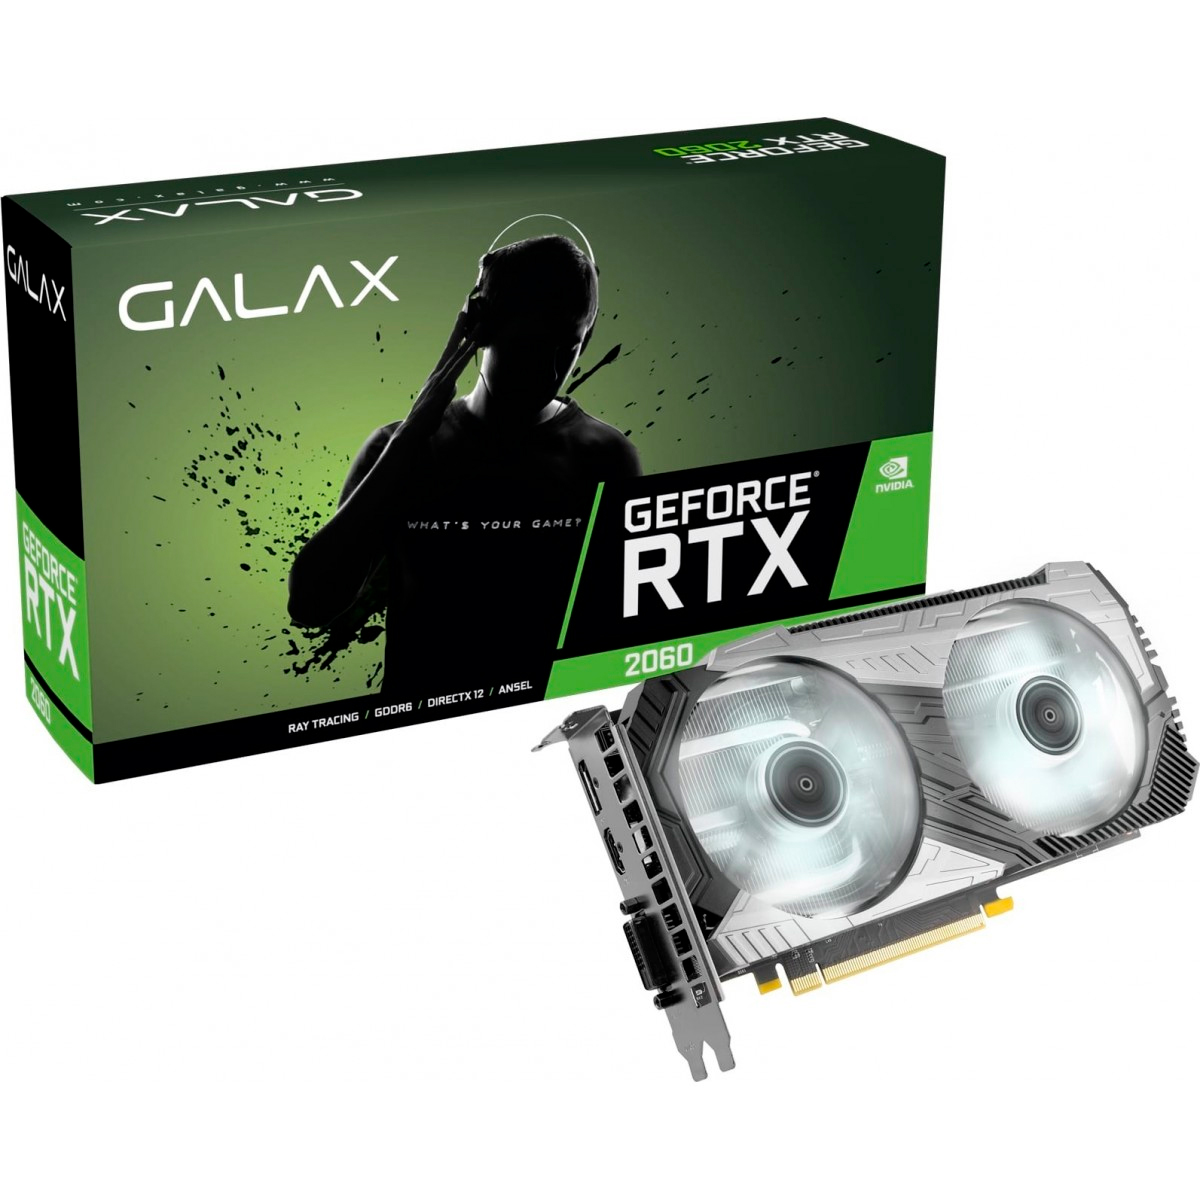 GeForce RTX 2060 6GB GDDR6 192bits - 1-Click OC Plus - Galax 26NRL7HP68CX